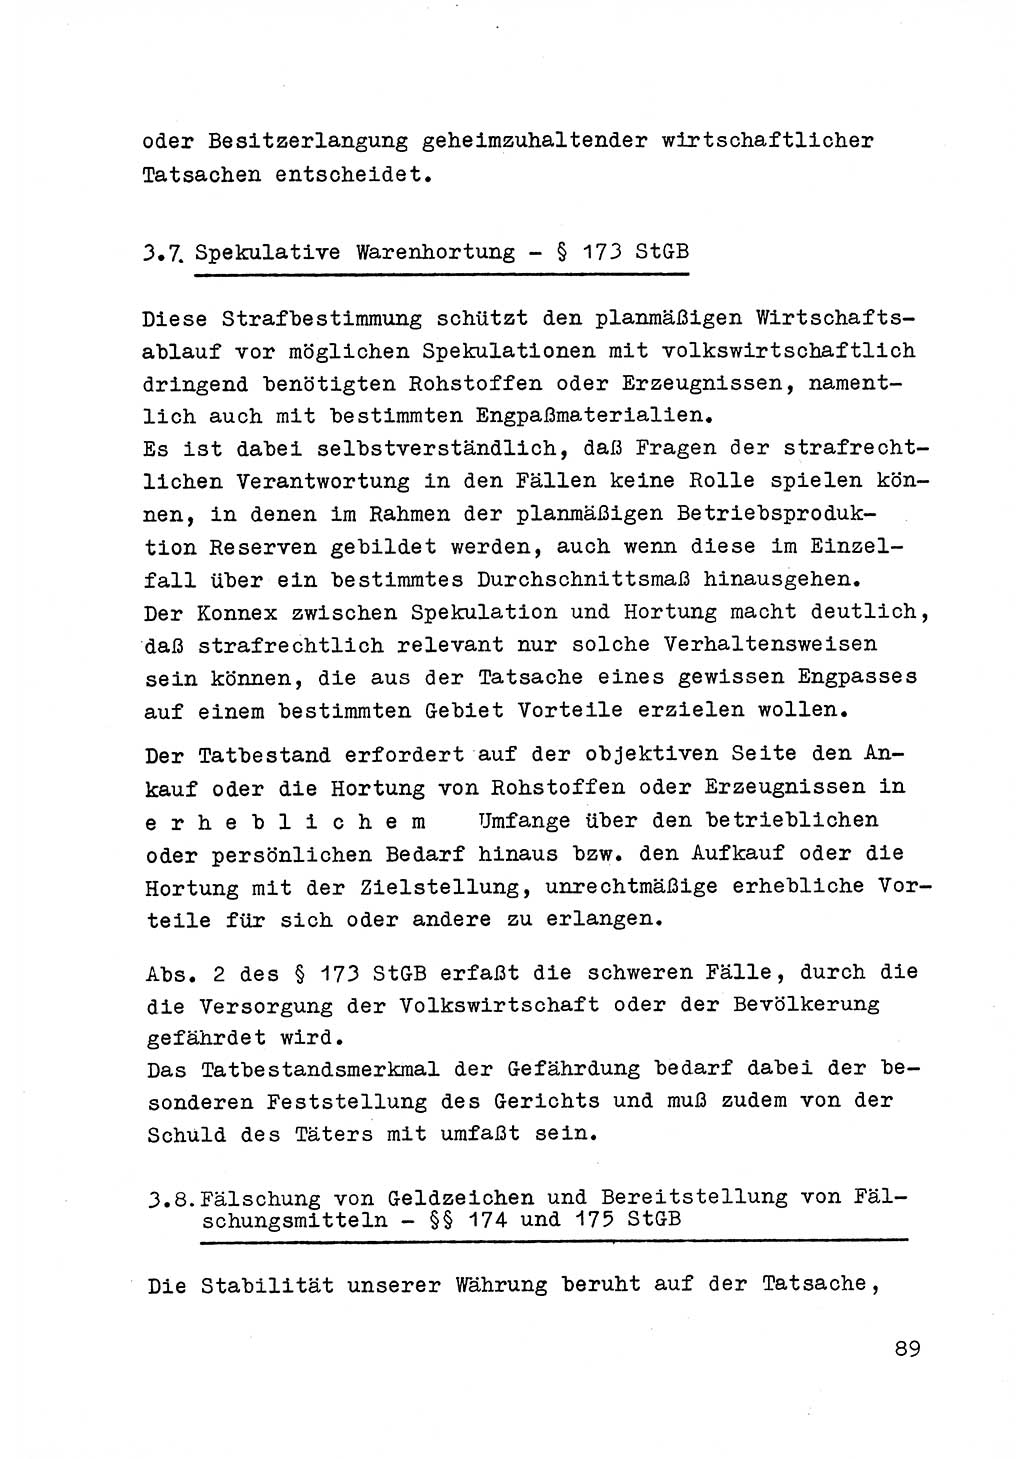 Strafrecht der DDR (Deutsche Demokratische Republik), Besonderer Teil, Lehrmaterial, Heft 6 1970, Seite 89 (Strafr. DDR BT Lehrmat. H. 6 1970, S. 89)